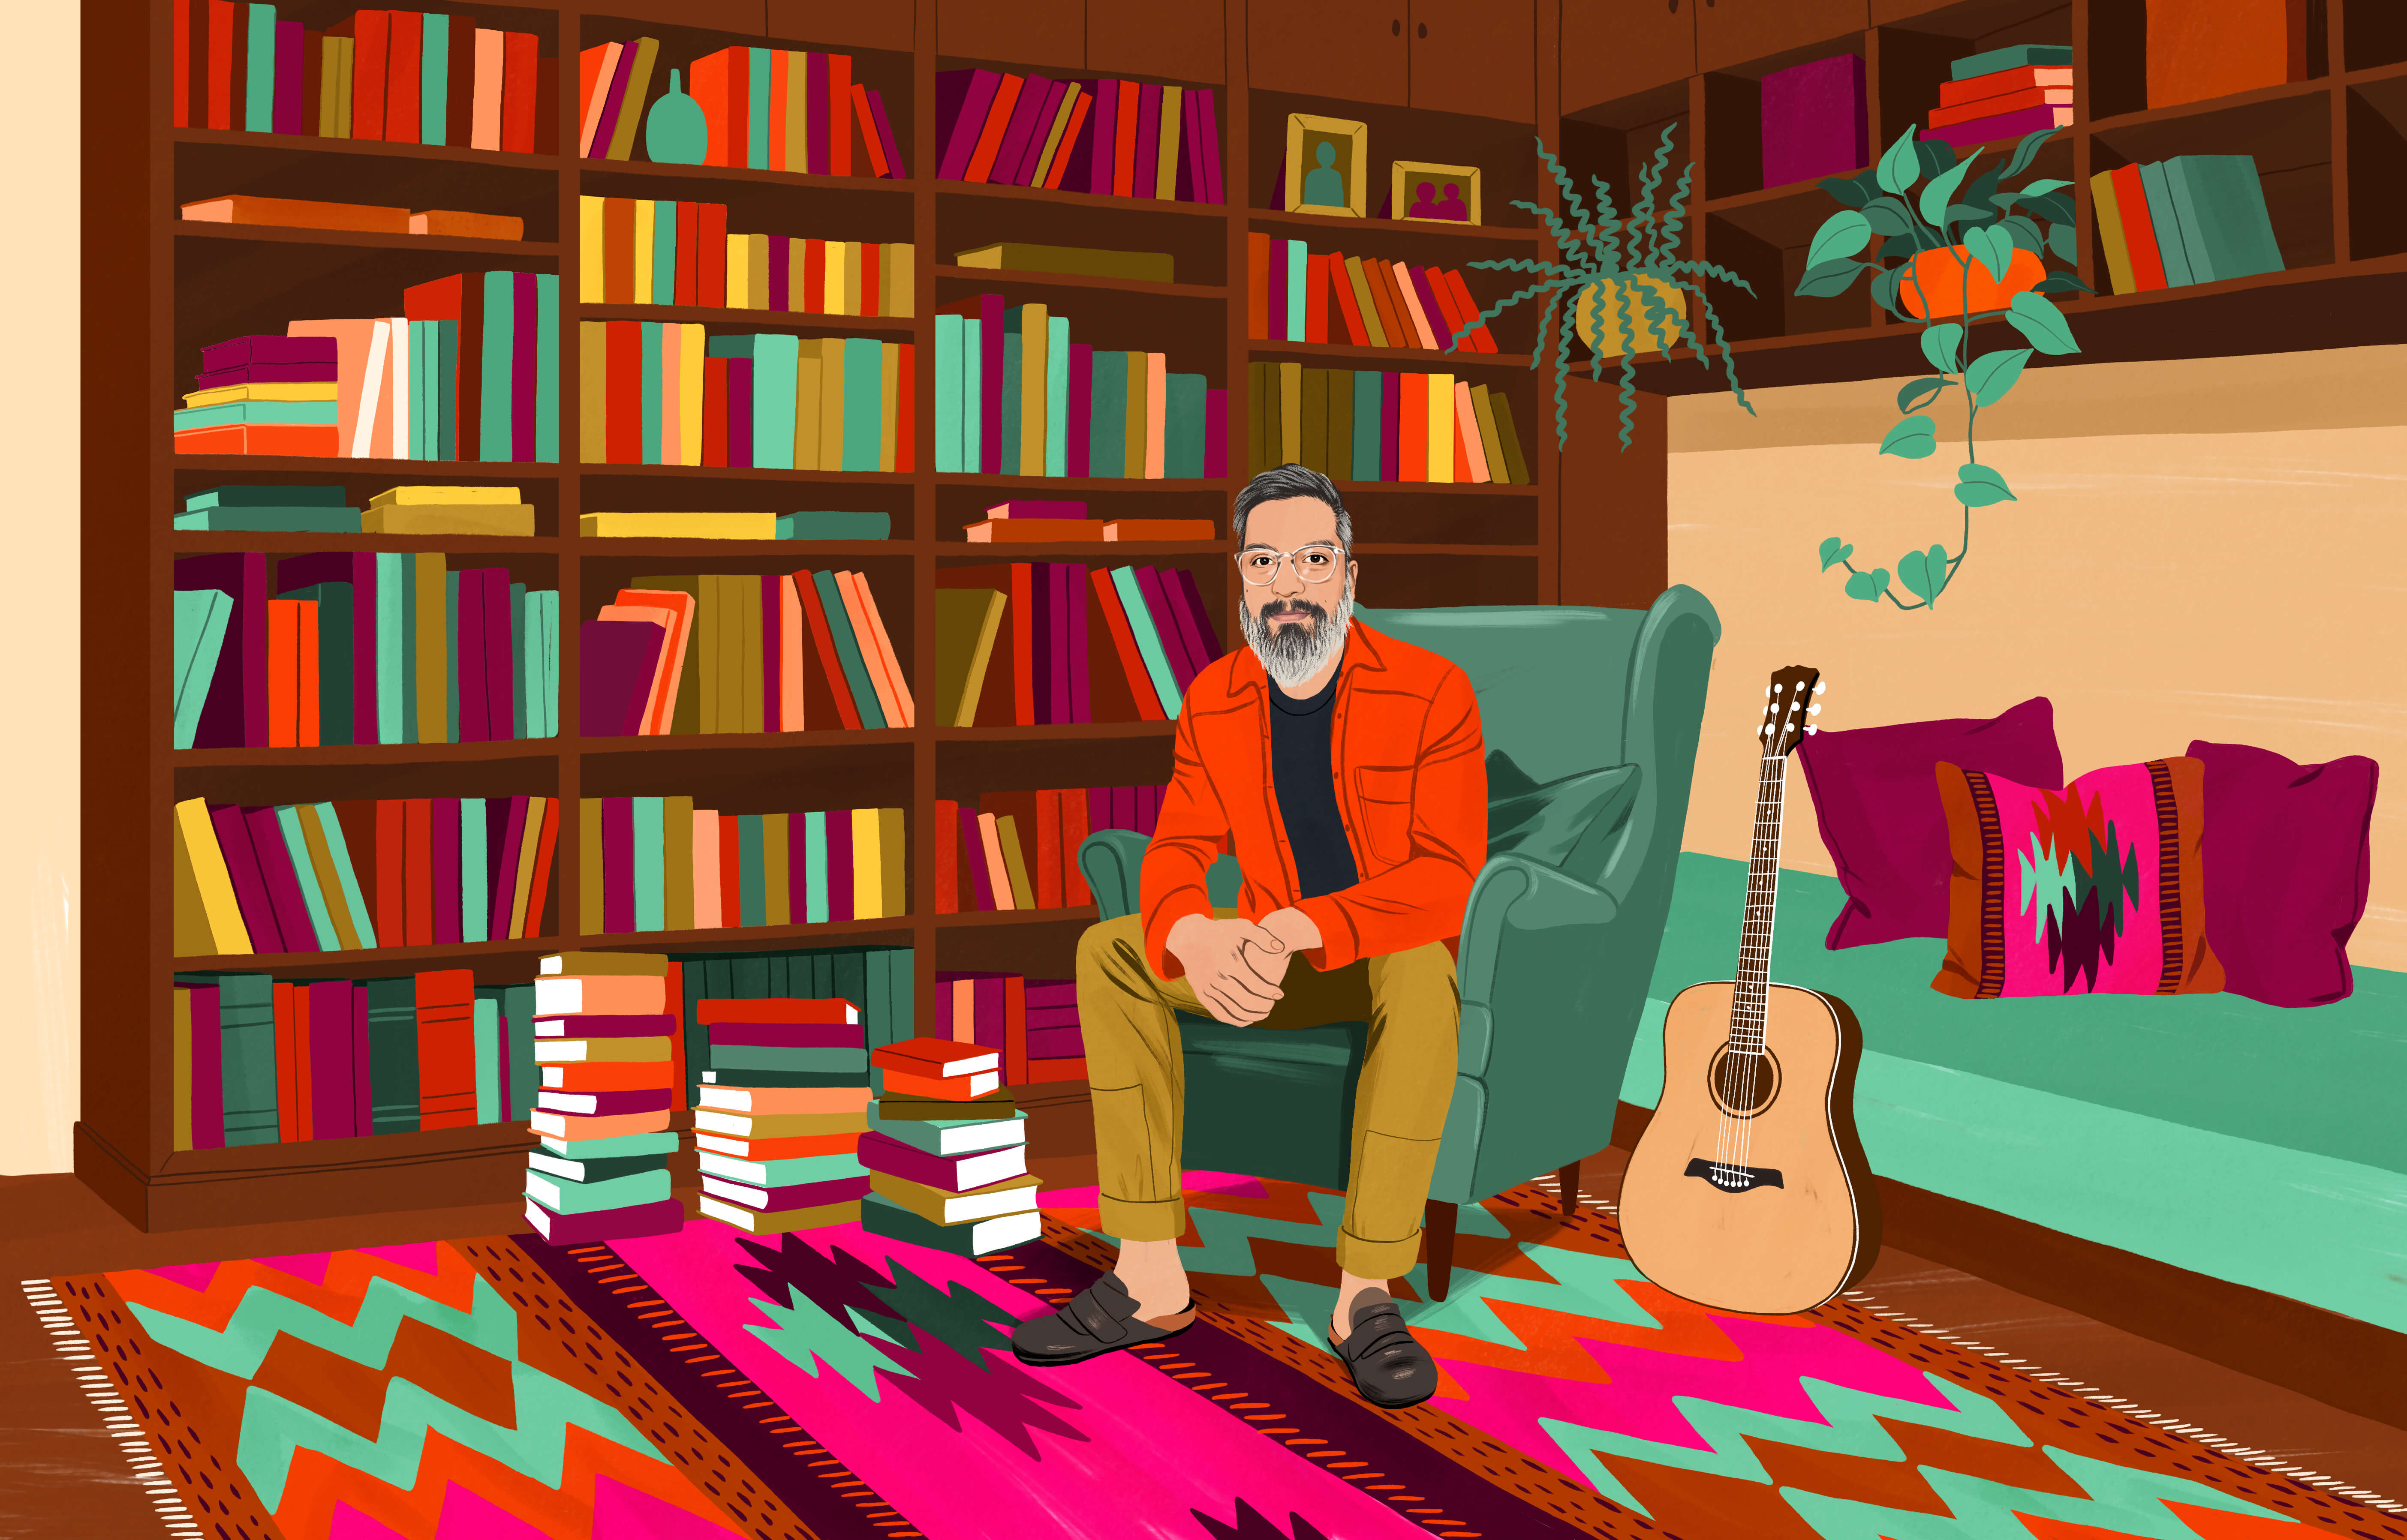 JP seduto su una poltrona, circondato da tanti libri su una libreria. Alcuni libri sono impilati per terra. Sul pavimento c’è un tradizionale tappeto cileno con un motivo colorato. Vicino a sé ha una chitarra acustica.